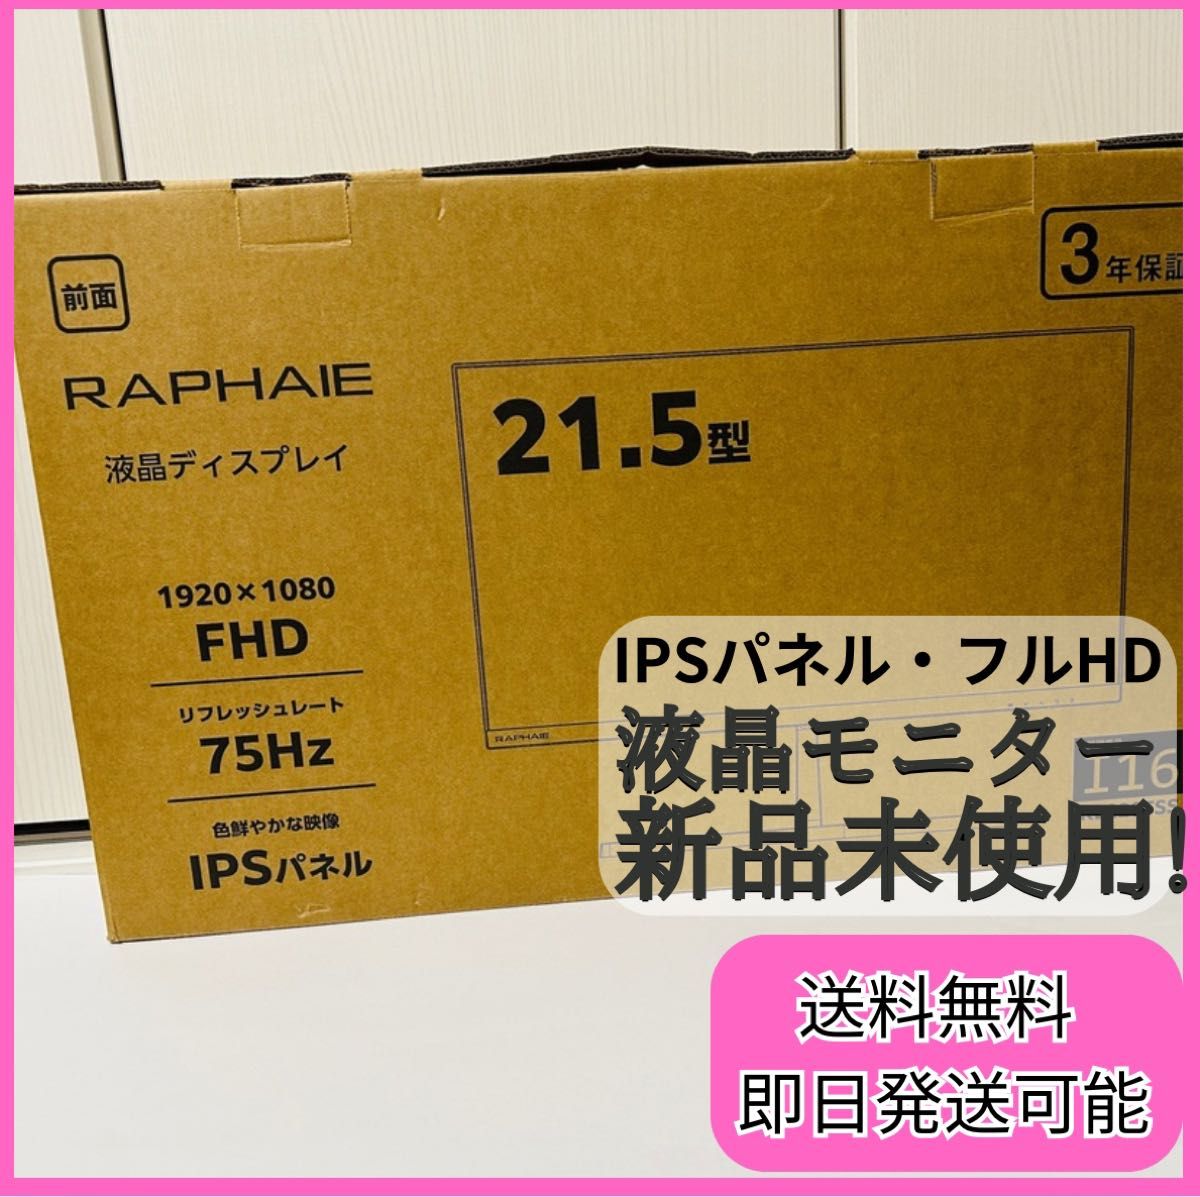 【新品・未使用】RAPHAIE 21.5型フルHD液晶モニター RL220FS ゲーミング